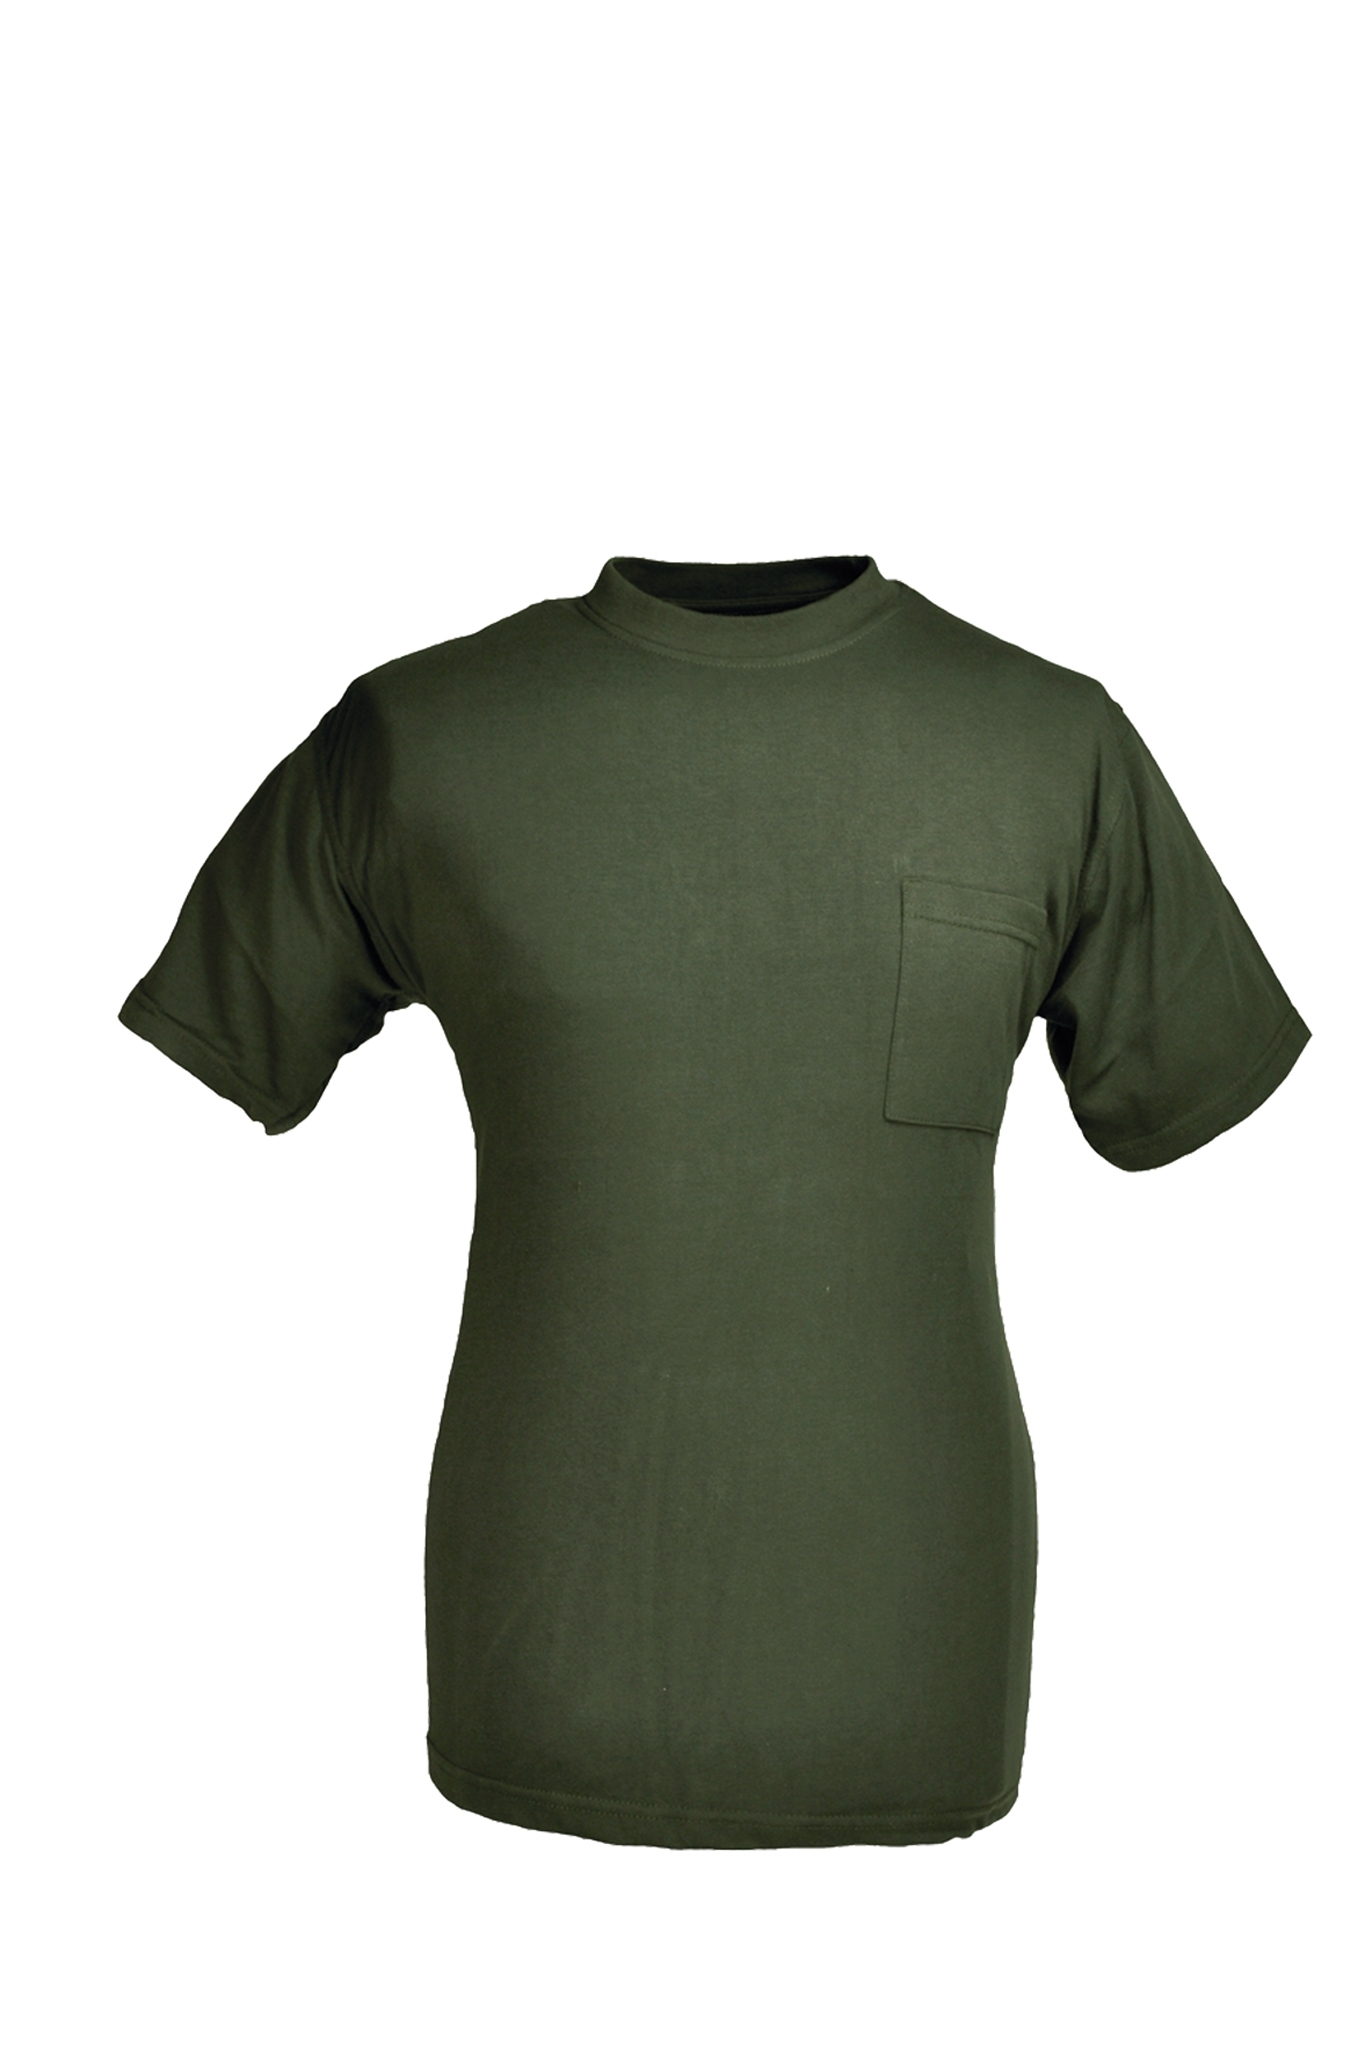 Rundhals T-Shirt oliv